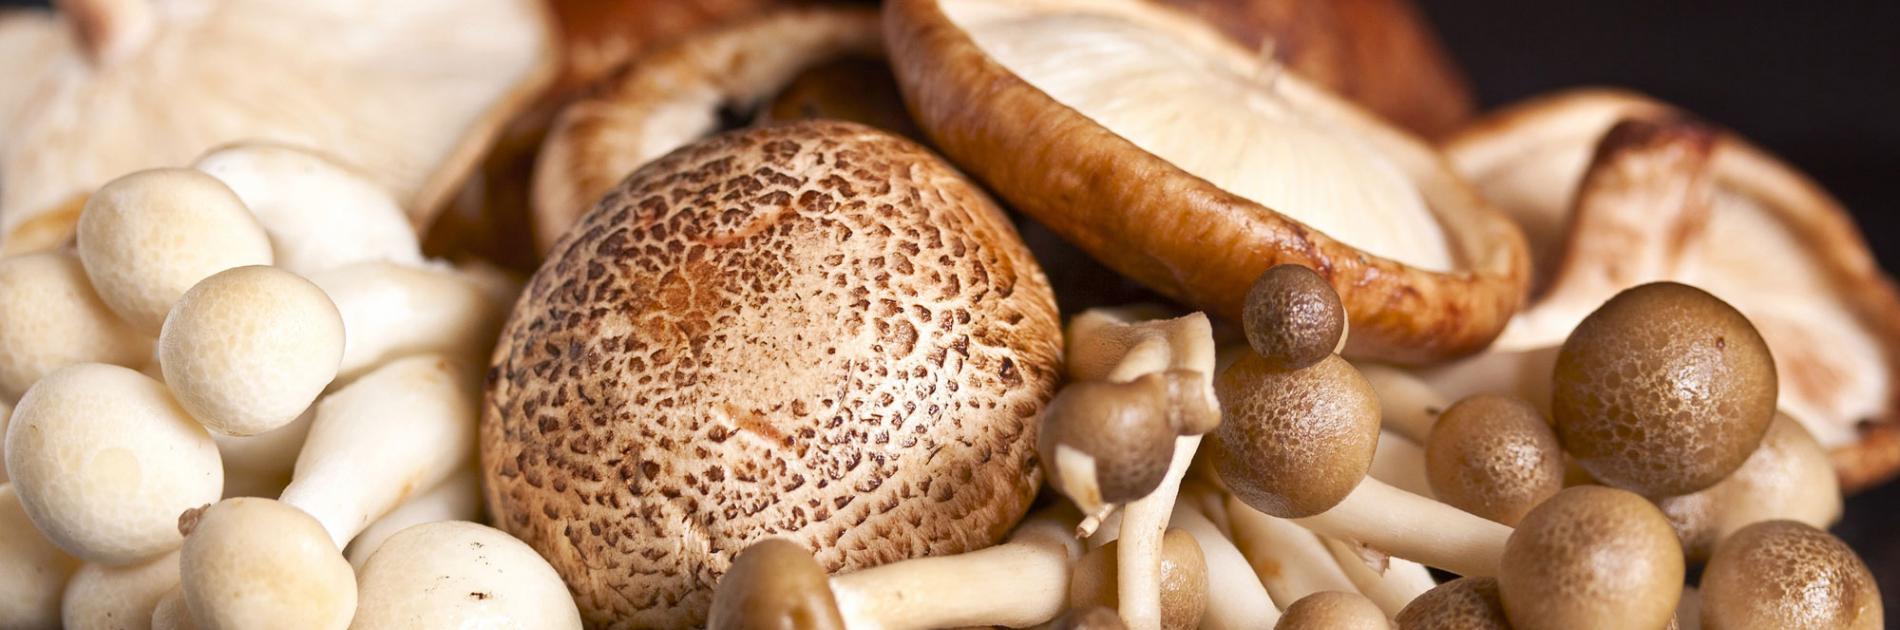 St. George’s mushroom (Calocybe Gambosa)